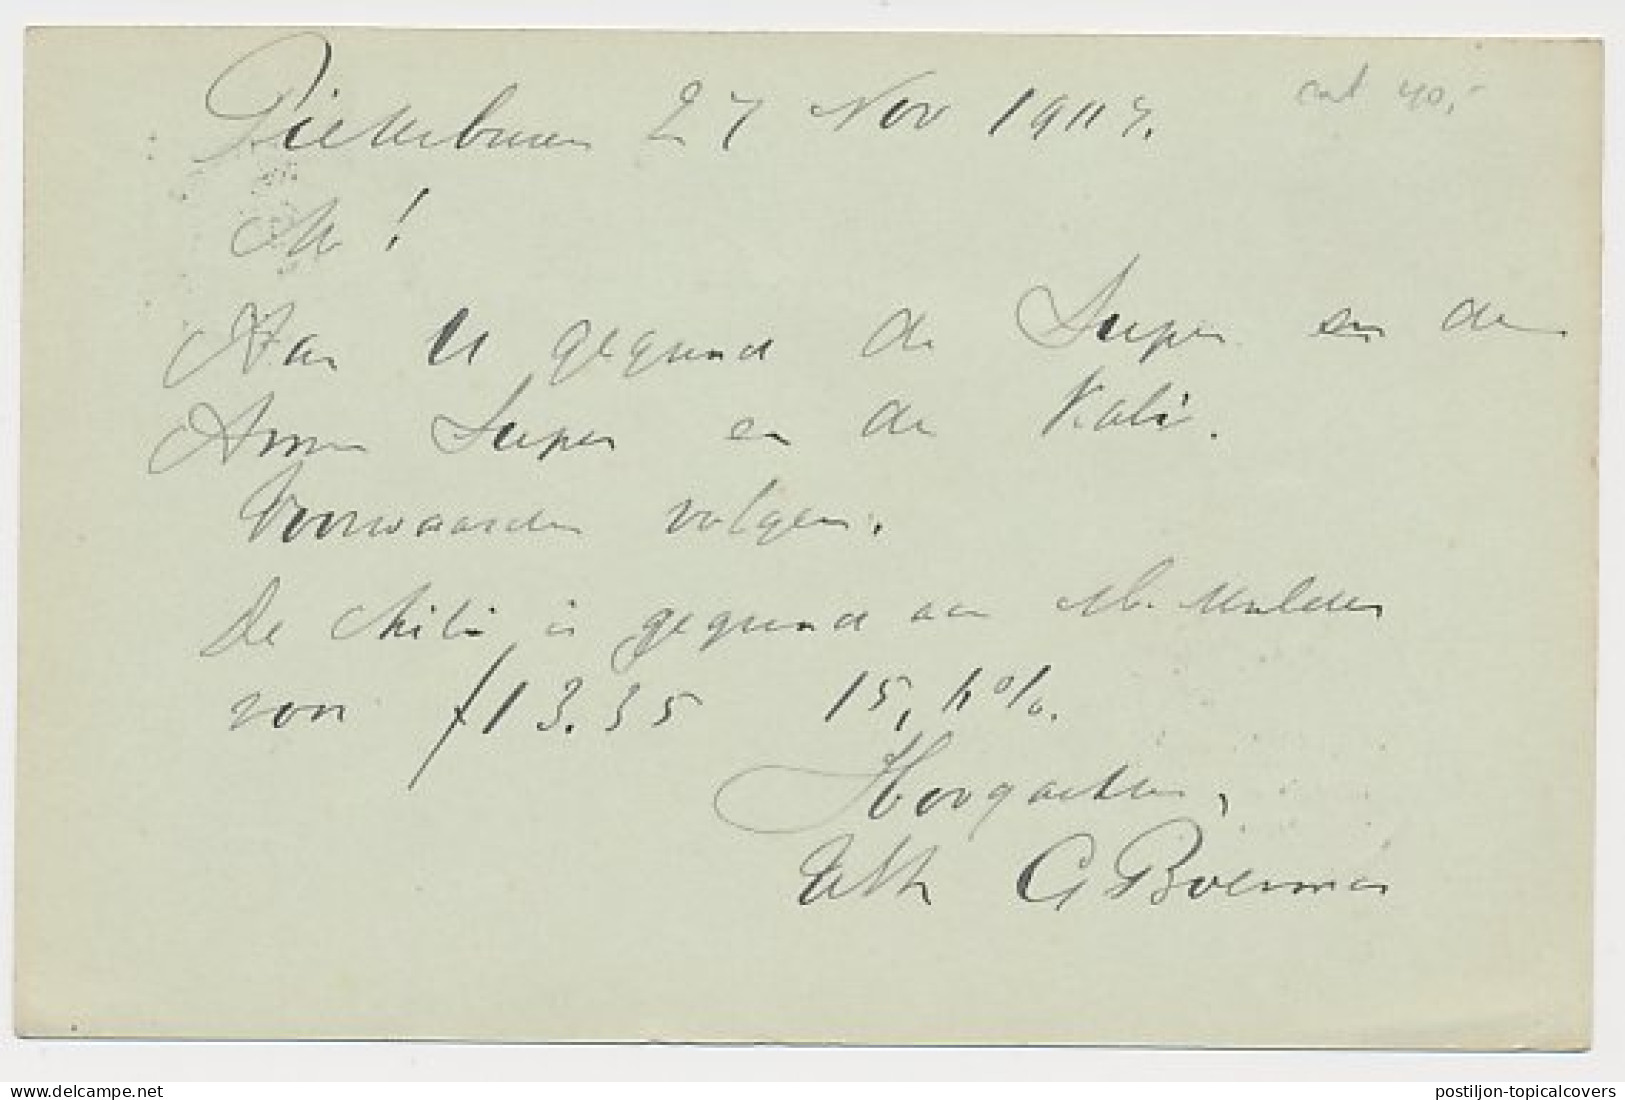 Kleinrondstempel Pieterburen 1907 - Ohne Zuordnung